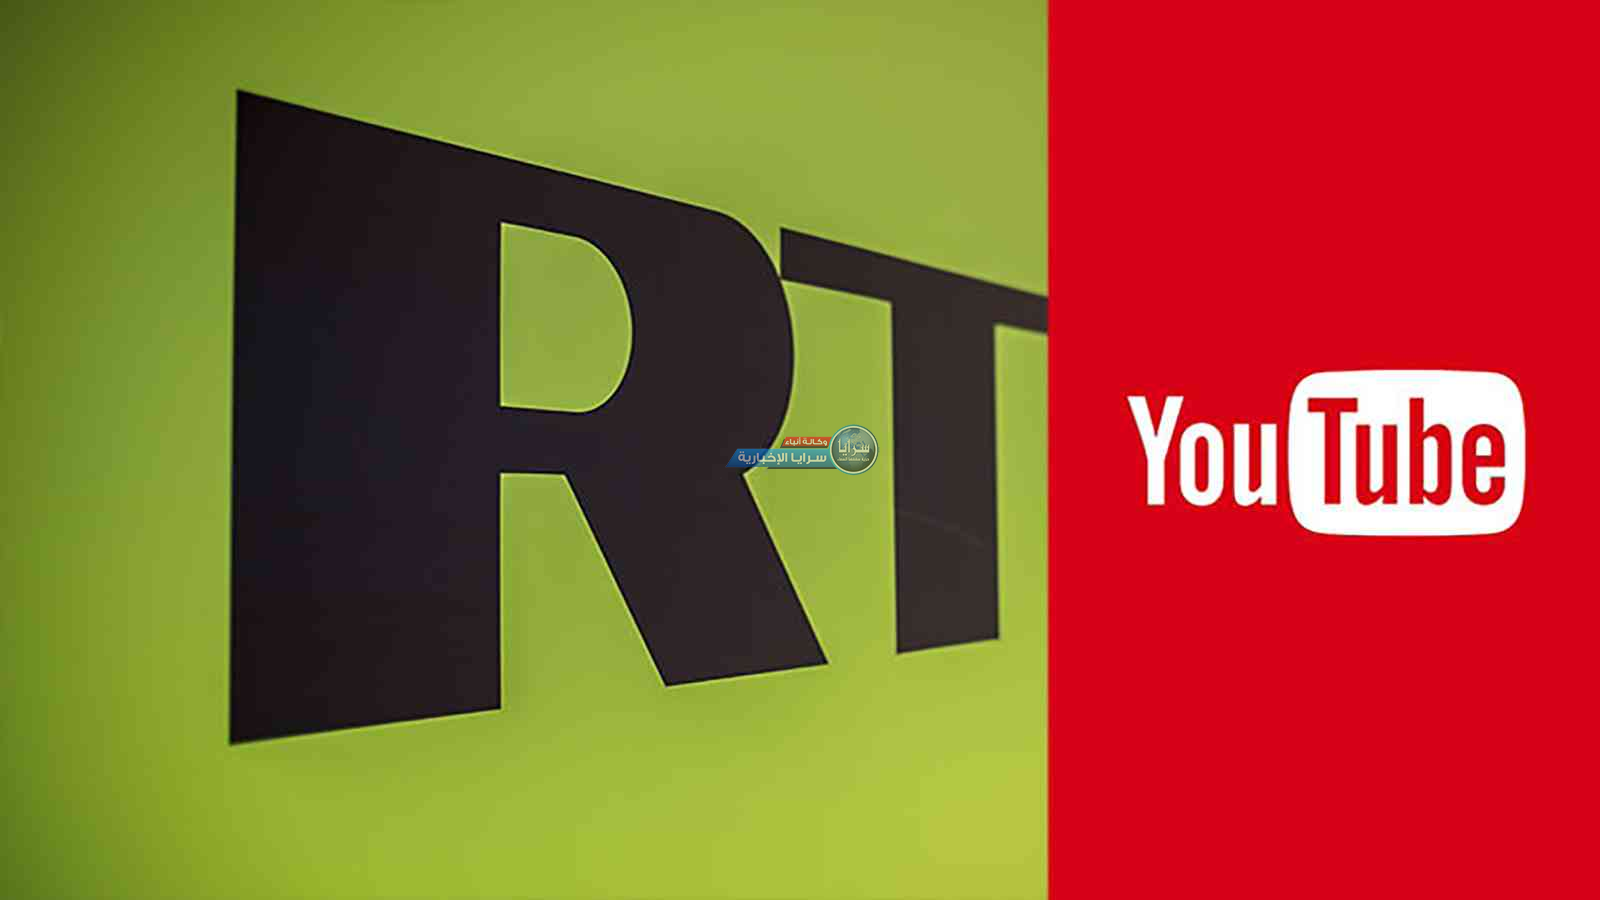 يوتيوب يحجب قنوات لمجموعة "آر تي" الإعلامية الروسية في ألمانيا